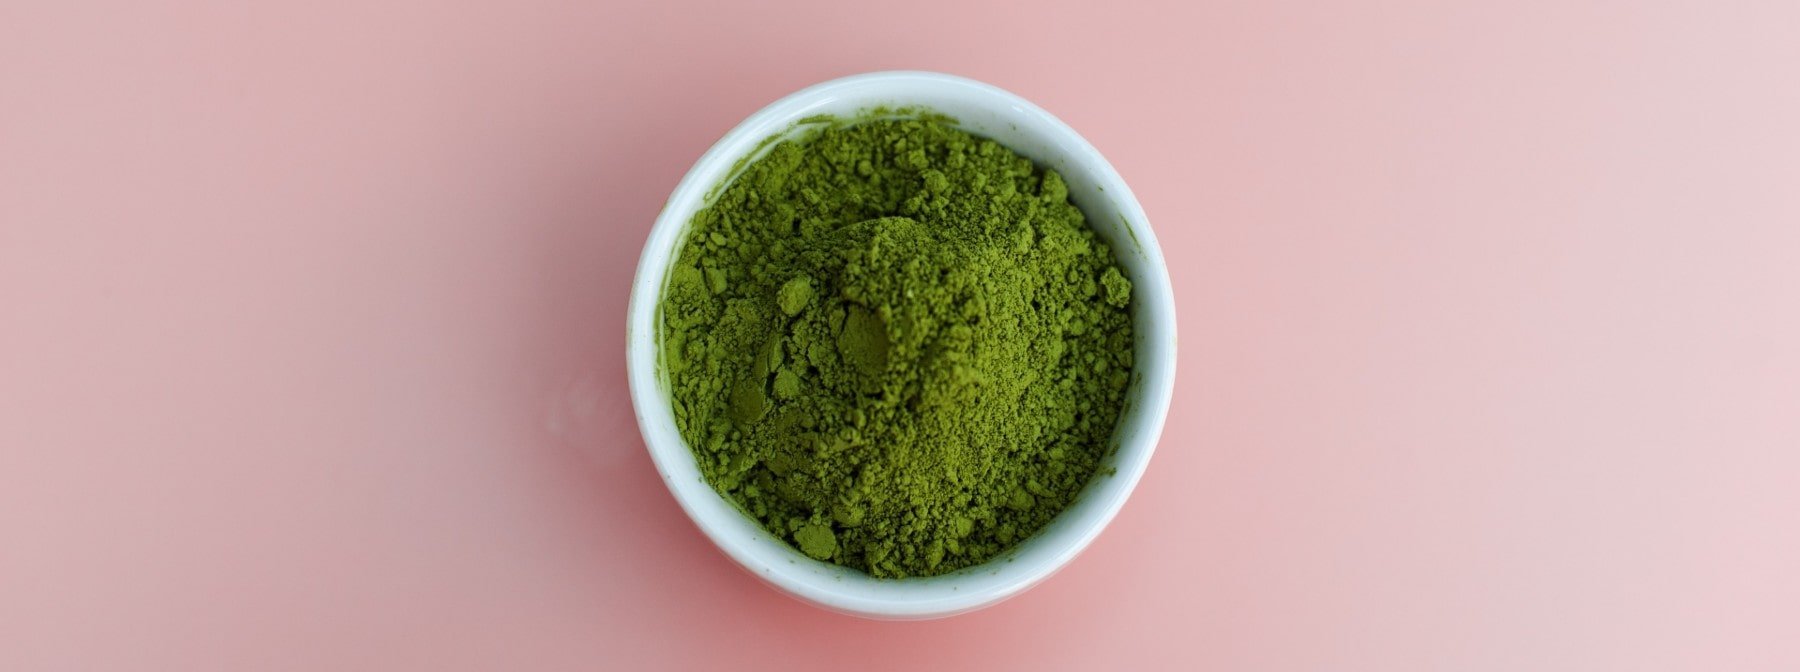 7 beneficii ale ceaiului verde asupra sănătății – Myprotein Blog